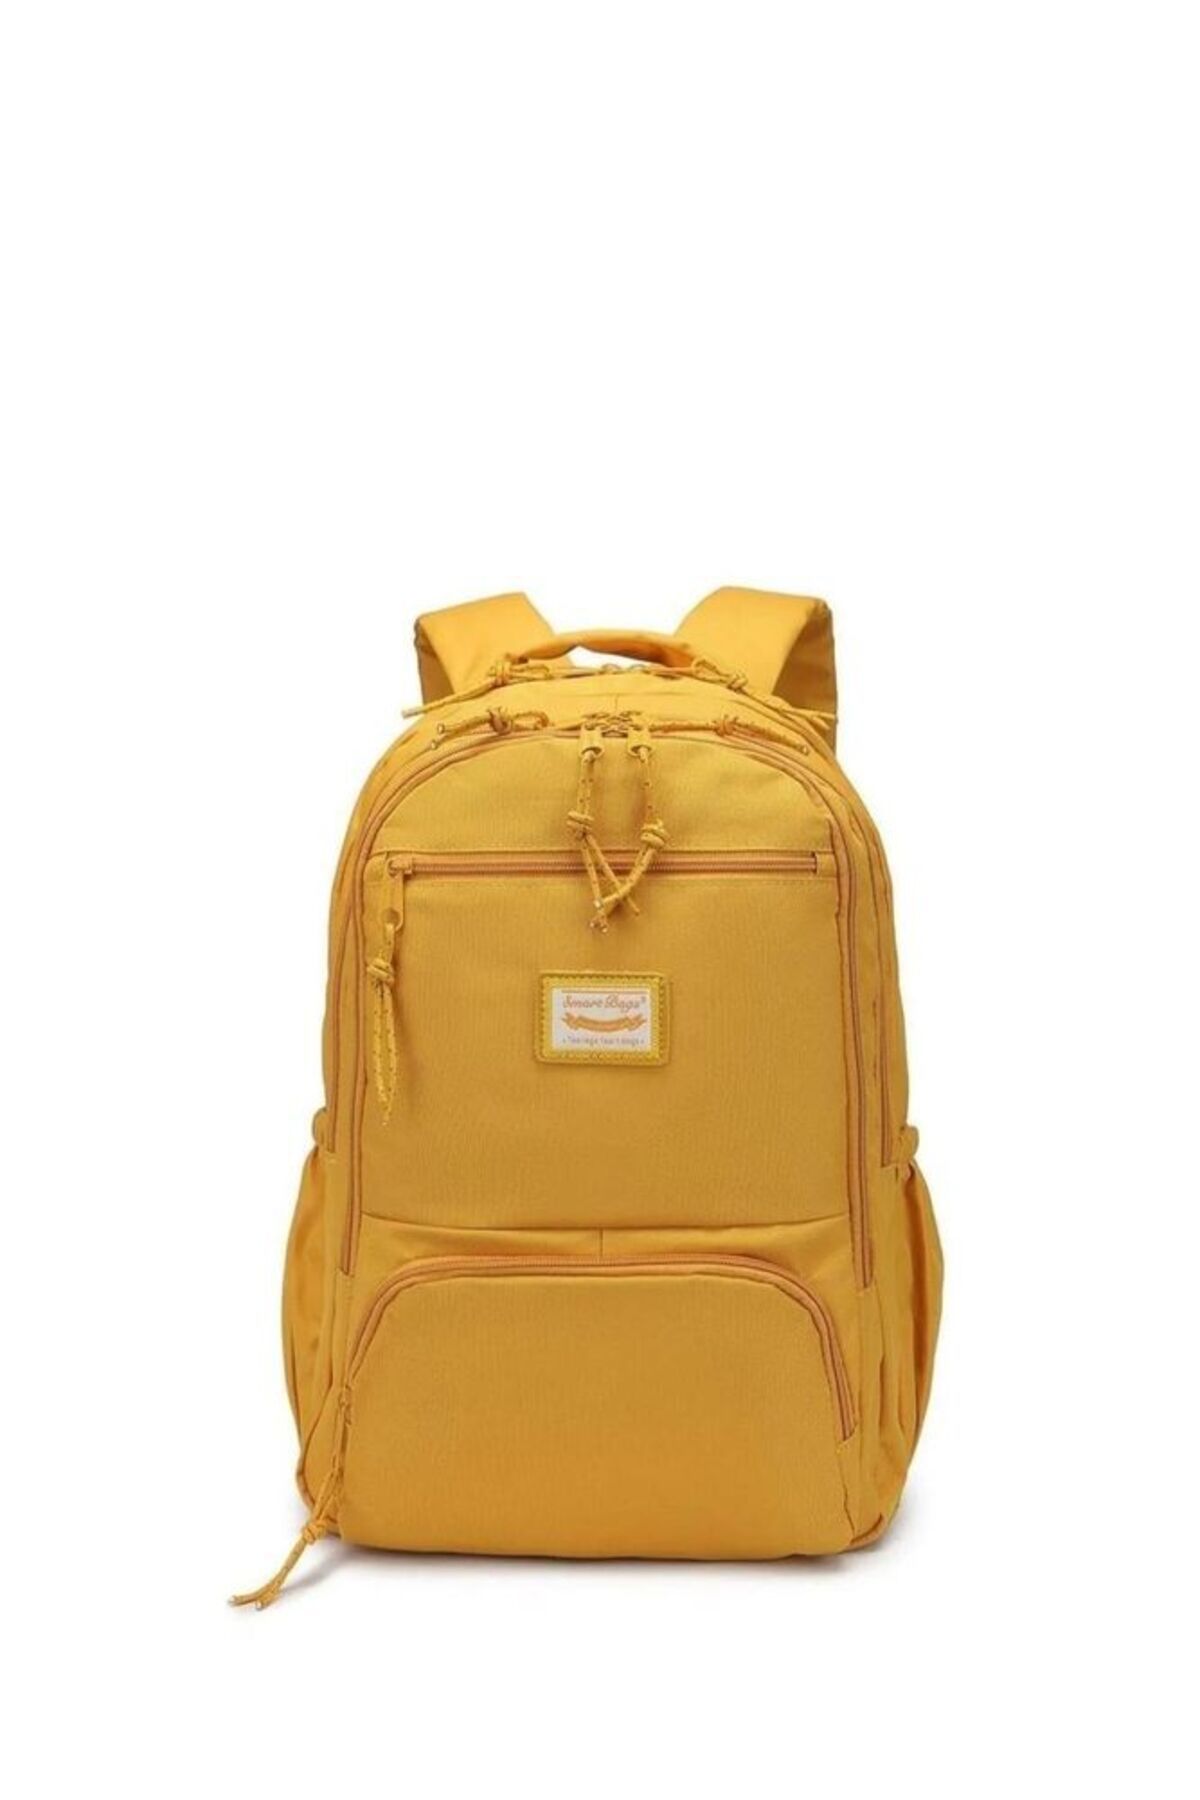 FLOWER CHILD-Tumblr-Aesthetic backpack | Aesthetic backpack, Womens backpack,  Yellow backpack